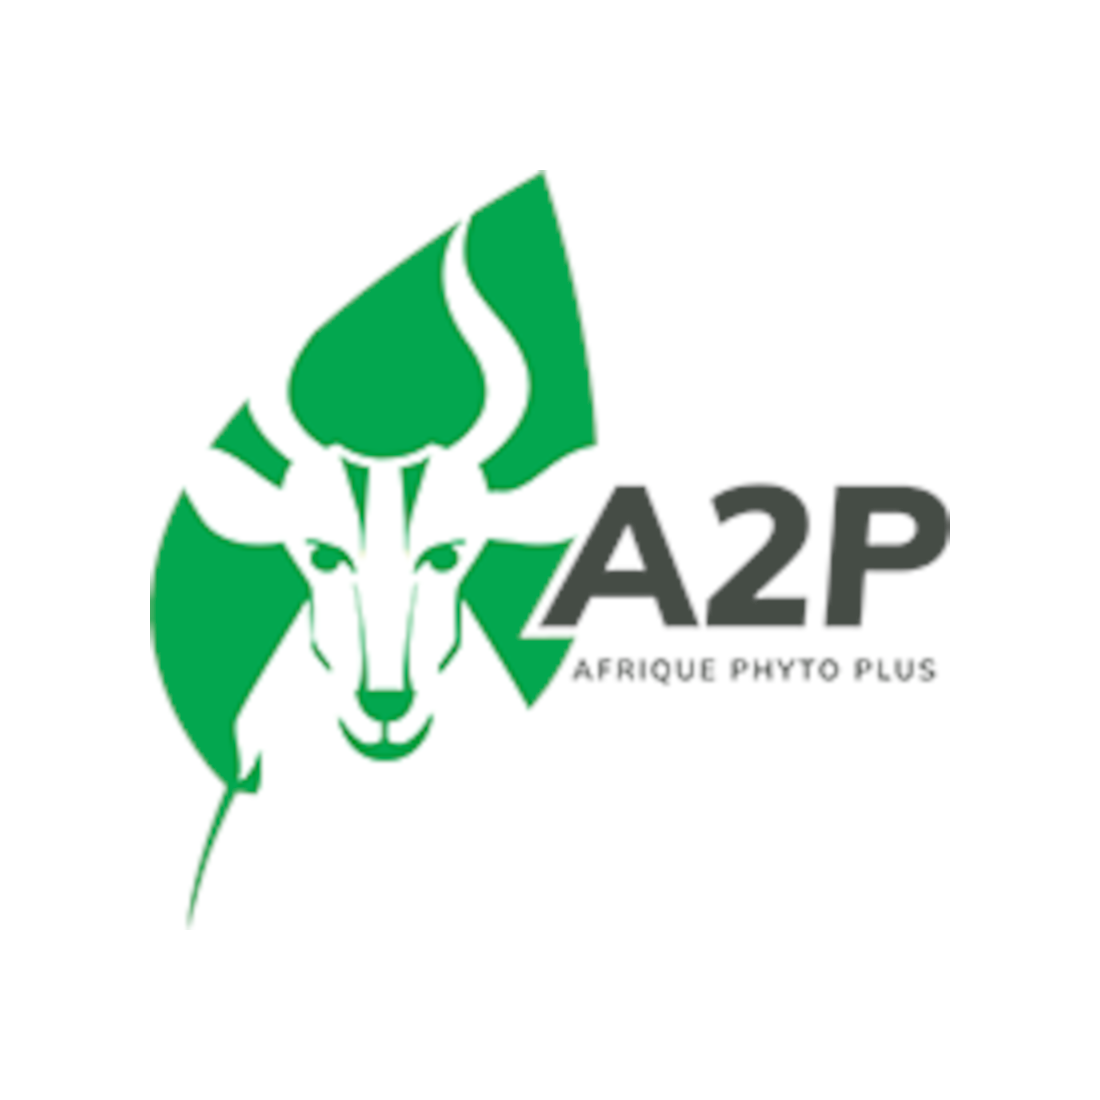 A2P-AFRICA PHYTO PLUS POUR UNE INSPECTION DE QUALITE REUSSIE